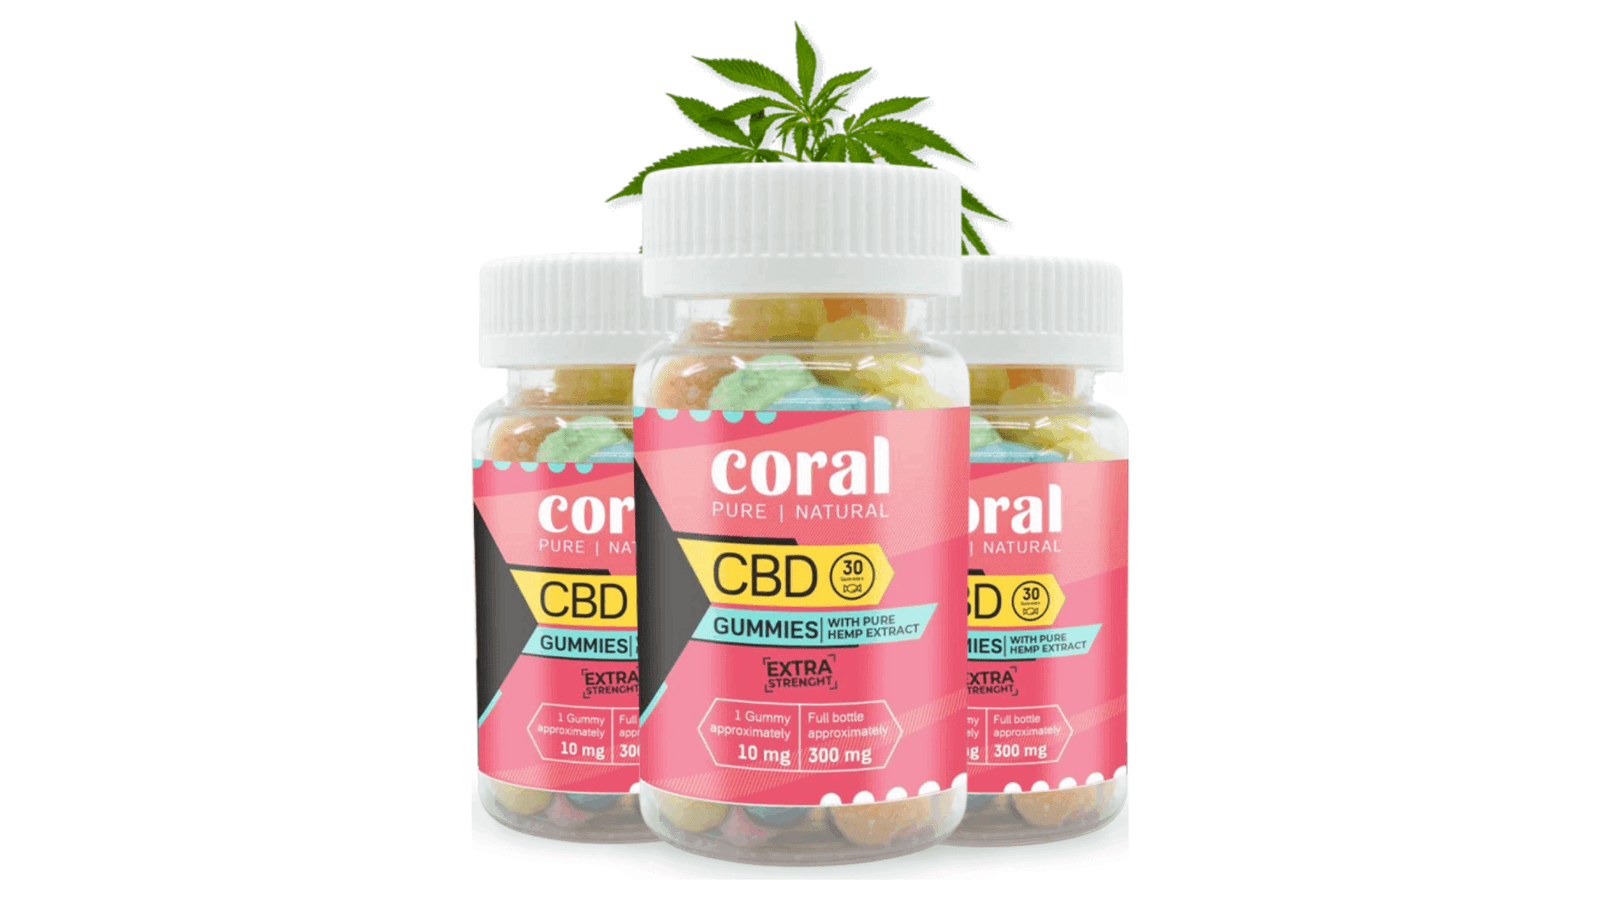 Coral CBD Gummies Supplement